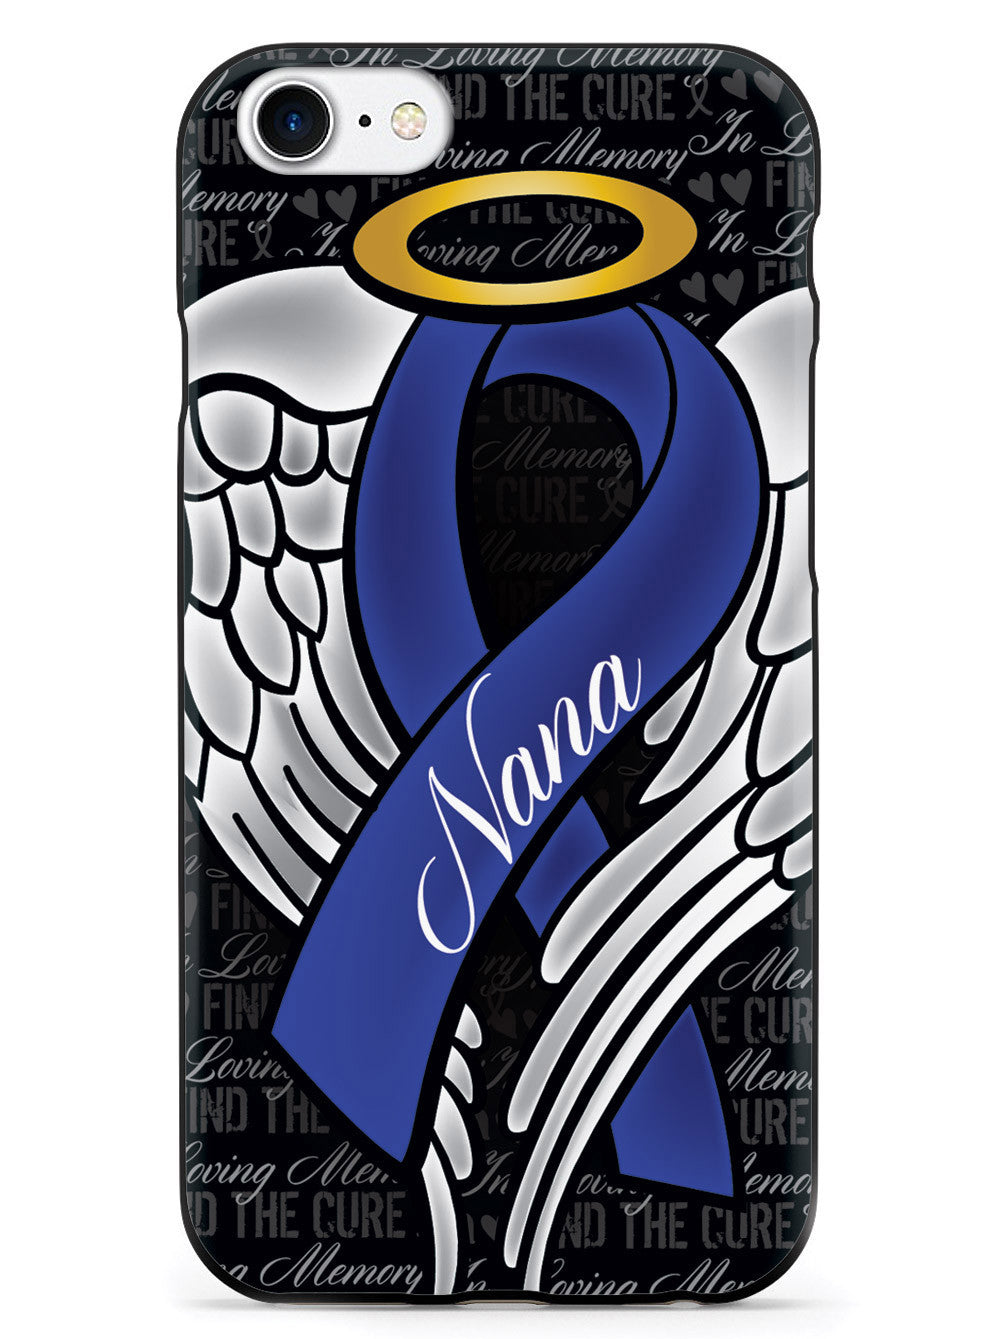 In Loving Memory of My Nana - Blue Ribbon Case